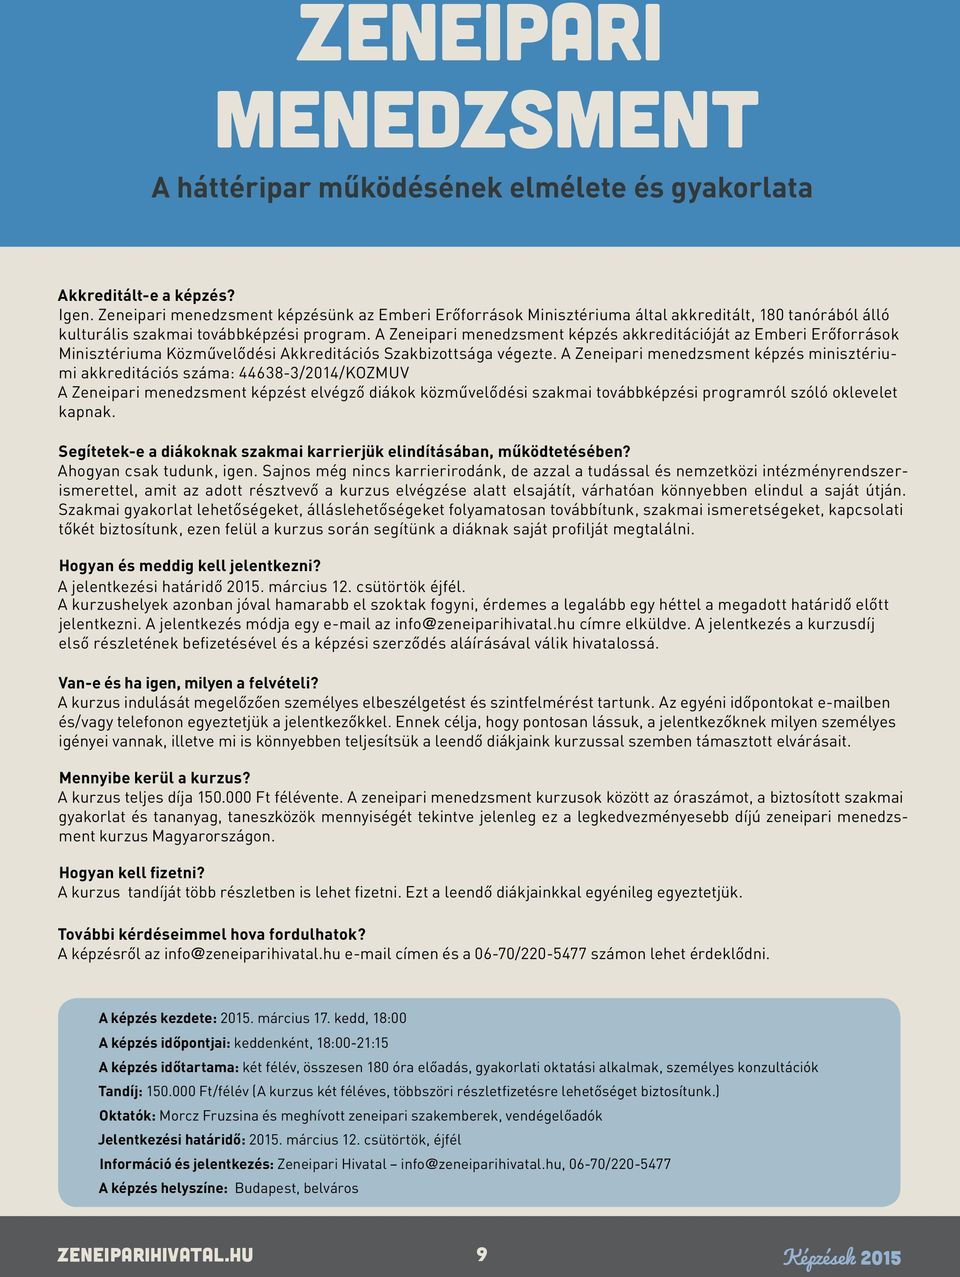 A Zeneipari menedzsment képzés minisztériumi akkreditációs száma: 44638-3/2014/KOZMUV A Zeneipari menedzsment képzést elvégző diákok közművelődési szakmai továbbképzési programról szóló oklevelet